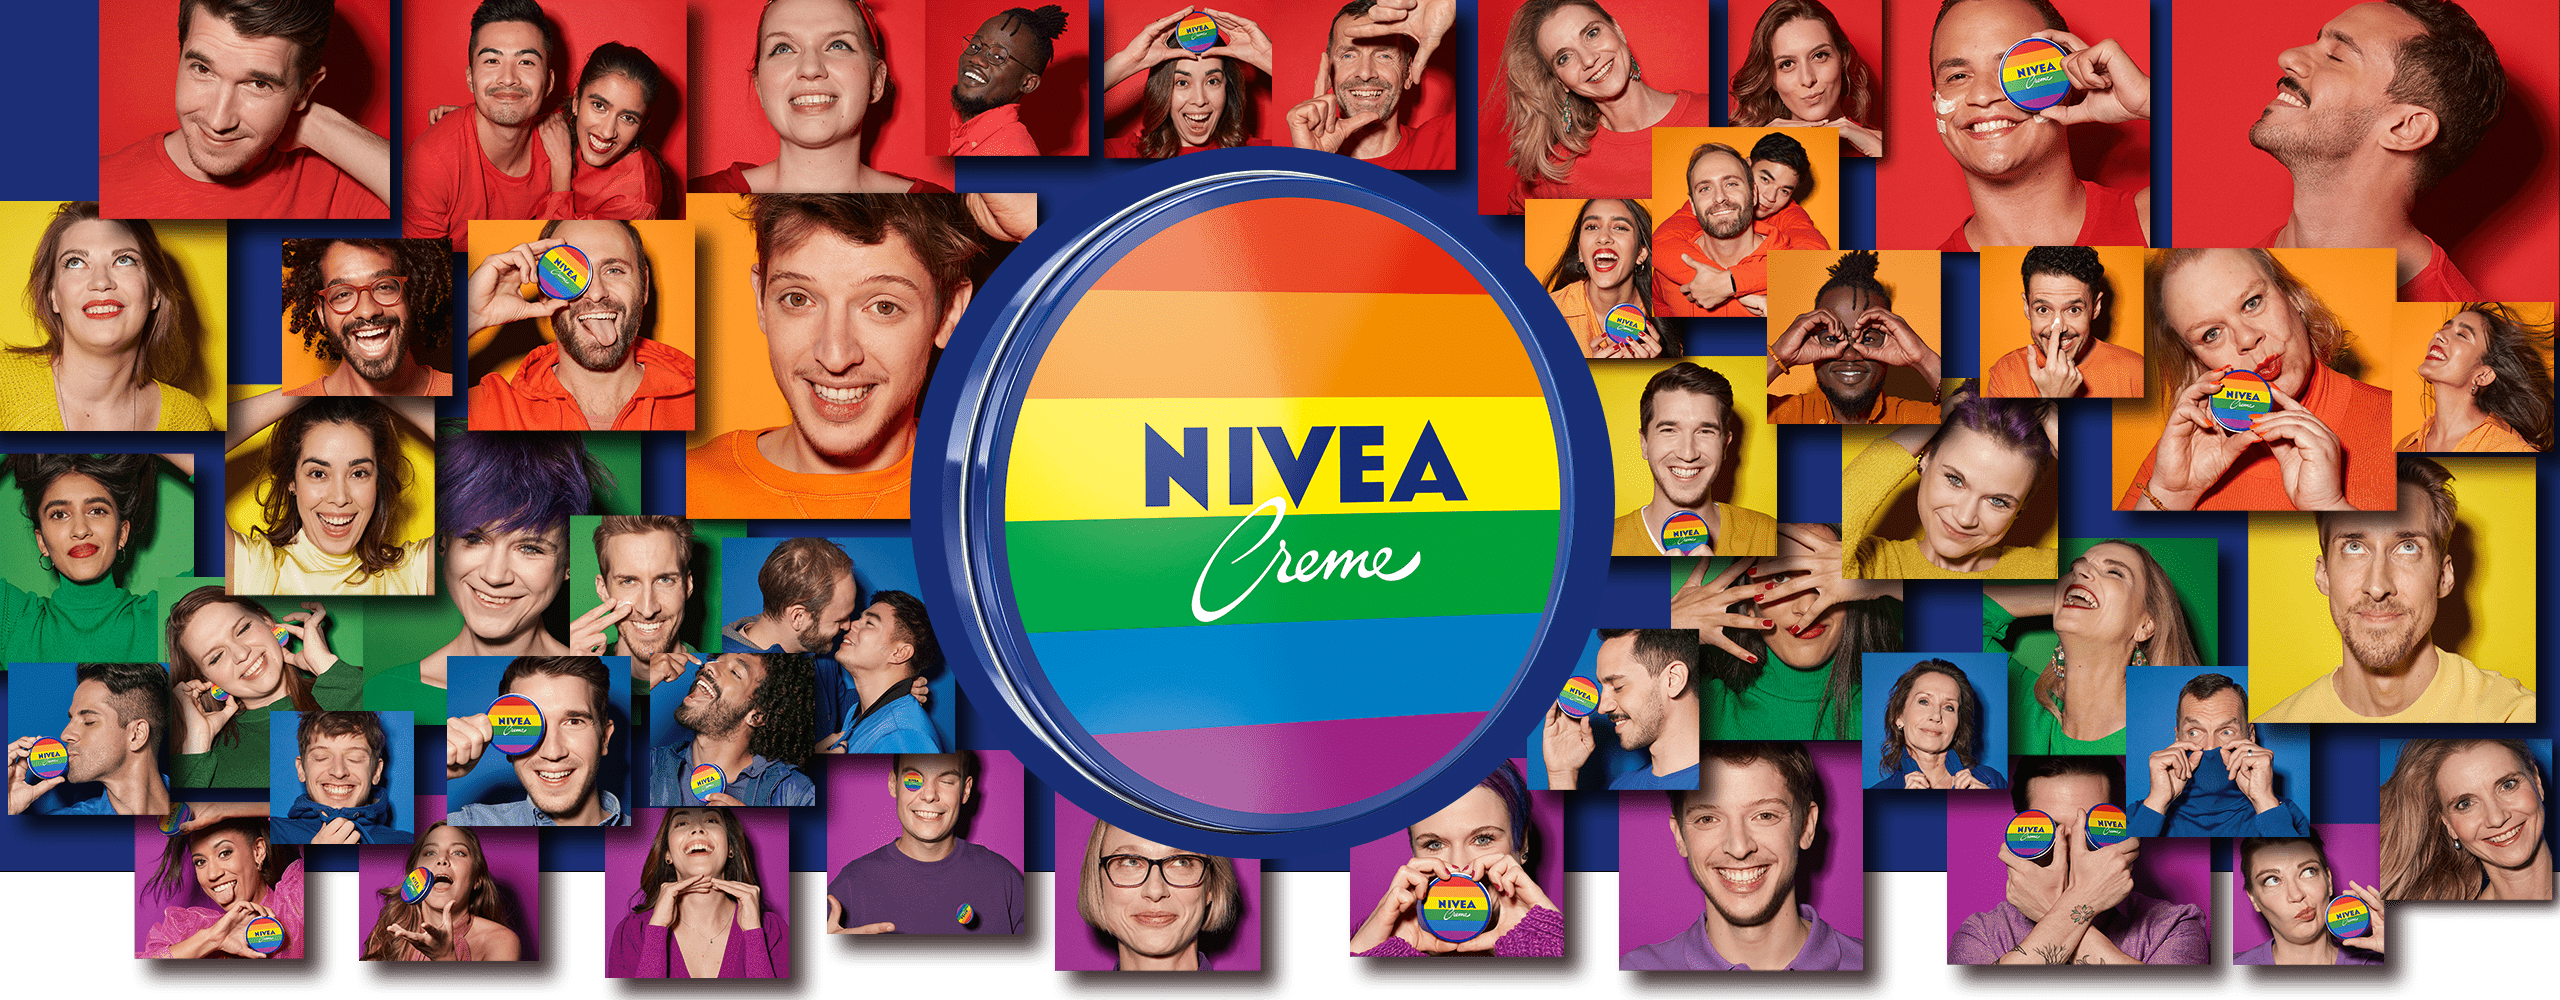 Pride Limited Edition NIVEA Creme 